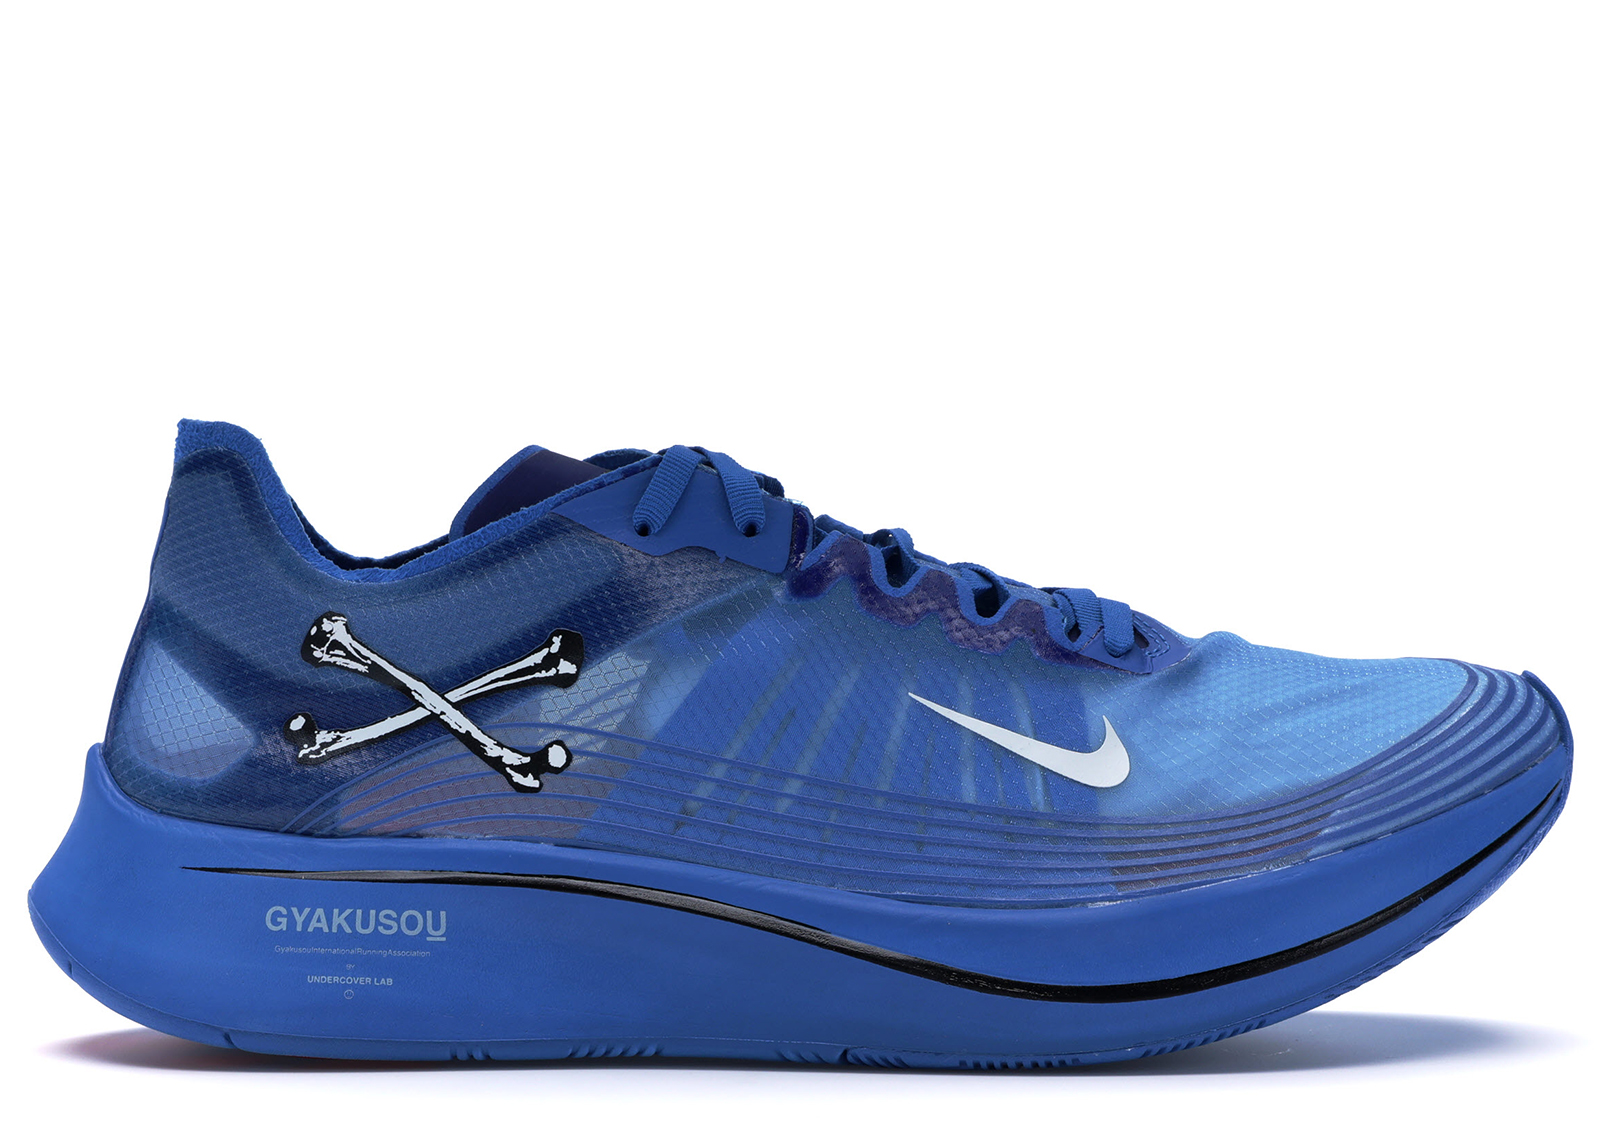 Nike Zoom Fly Undercover Gyakusou Blue